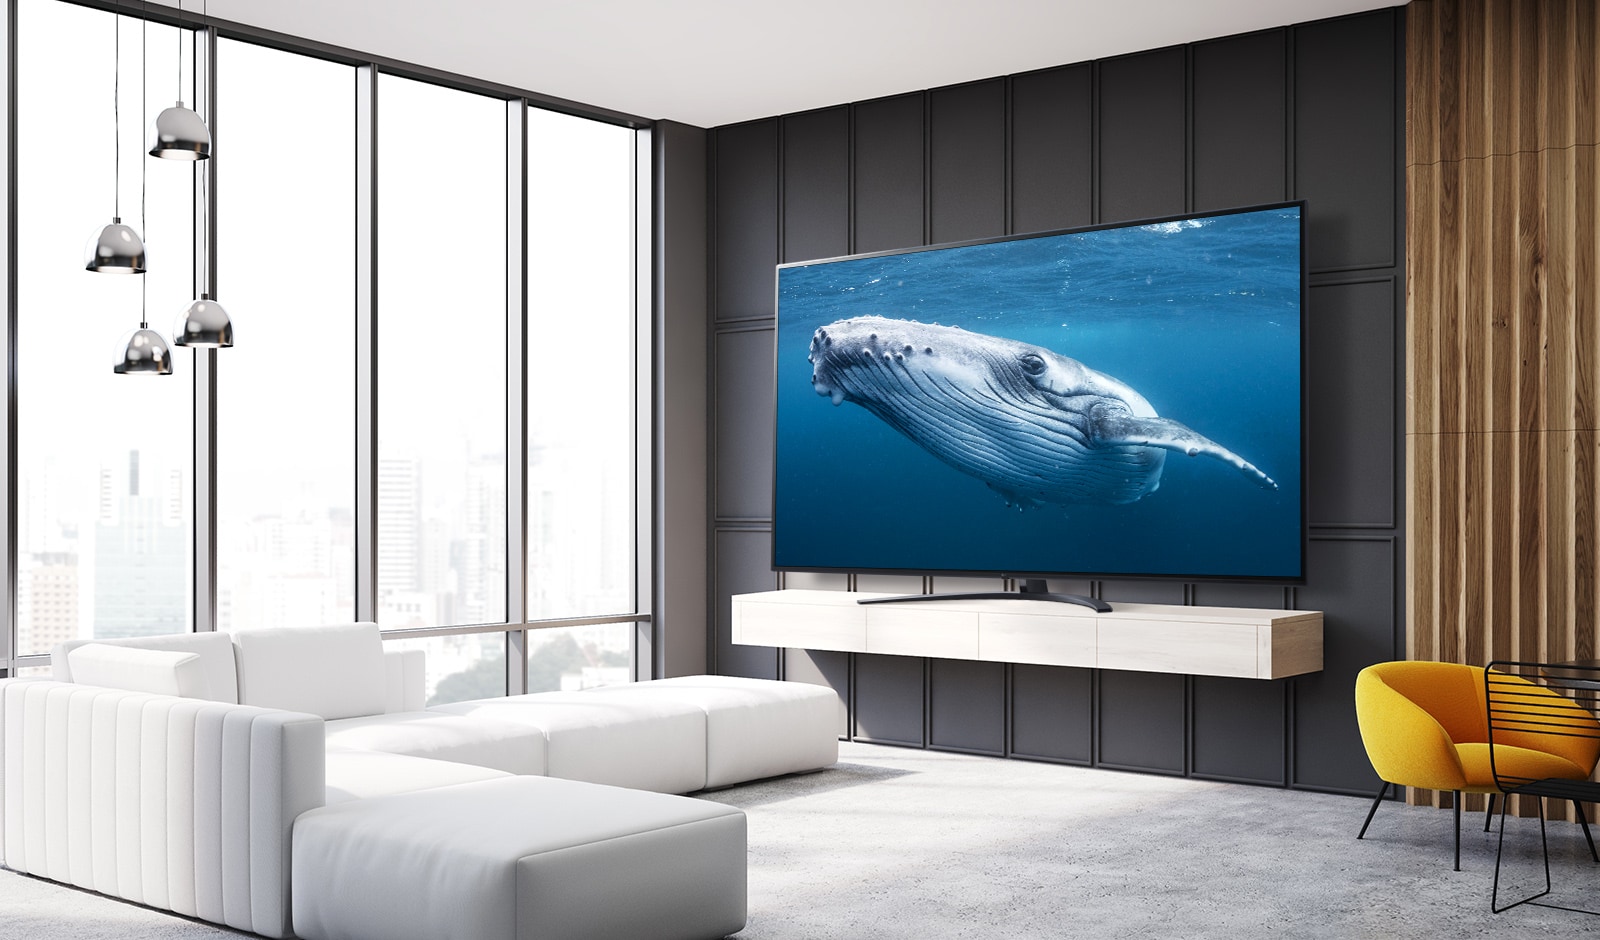 В гостиной есть телевизор с большим экраном, на котором отображается изображение кита в морской воде.